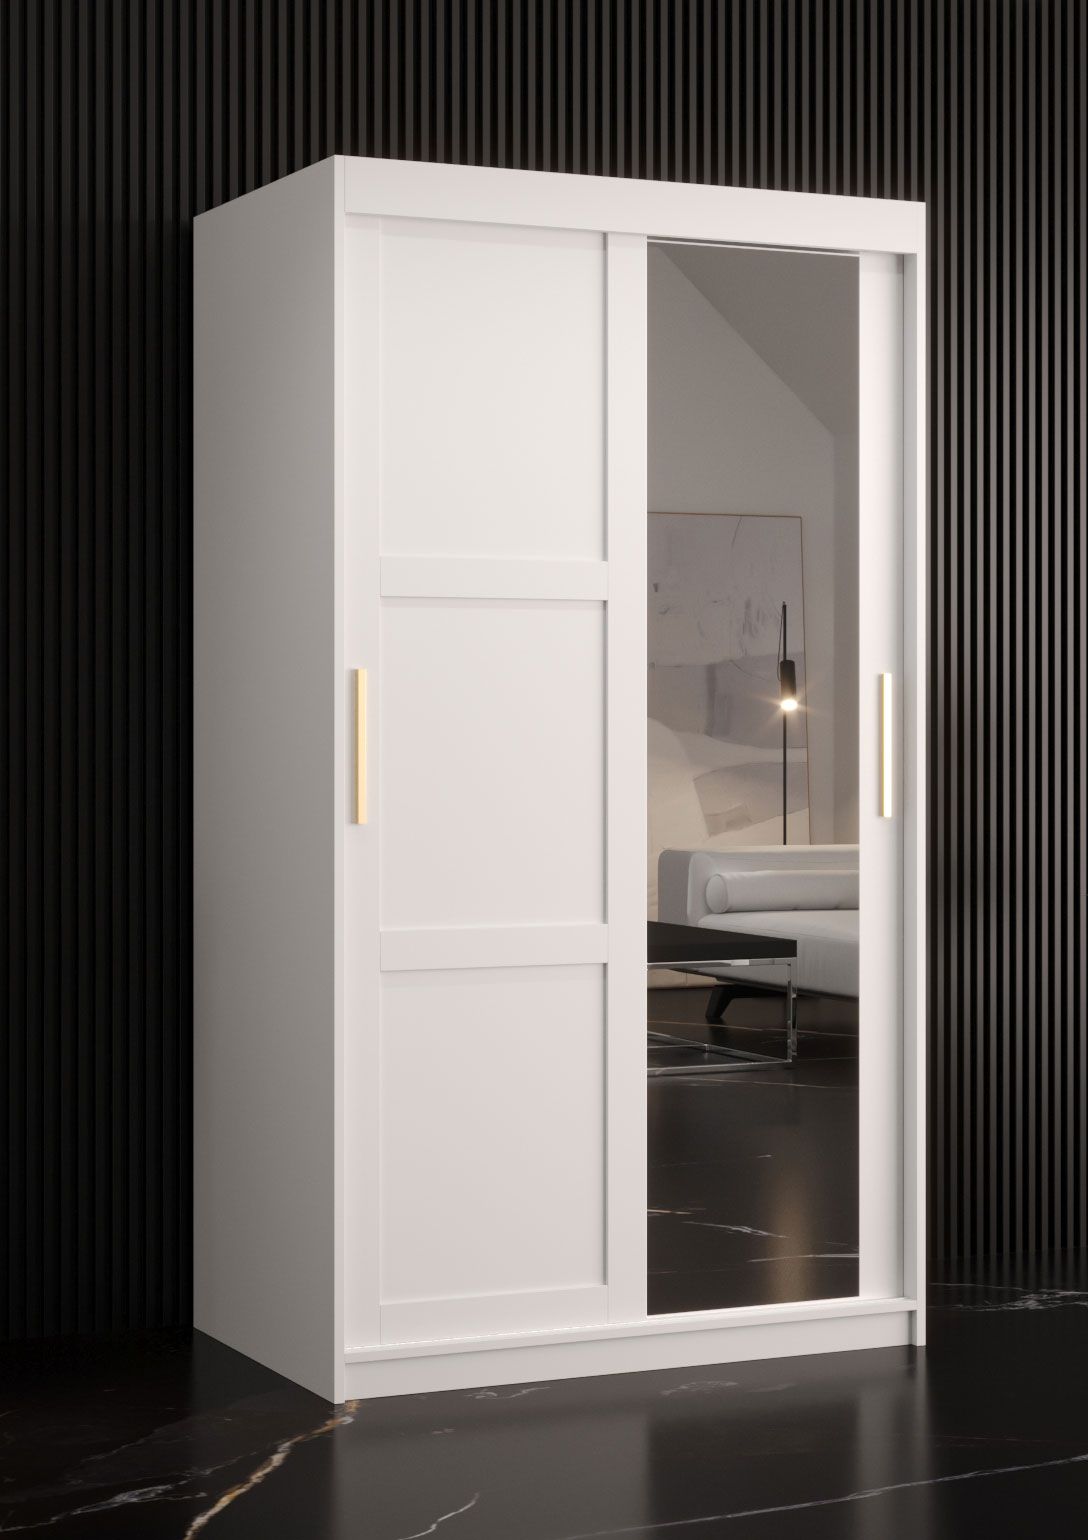 smalle / kolom kledingkast met één deur met spiegel Liskamm 25, kleur: mat wit - afmetingen: 200 x 100 x 62 cm (H x B x D), met vijf vakken